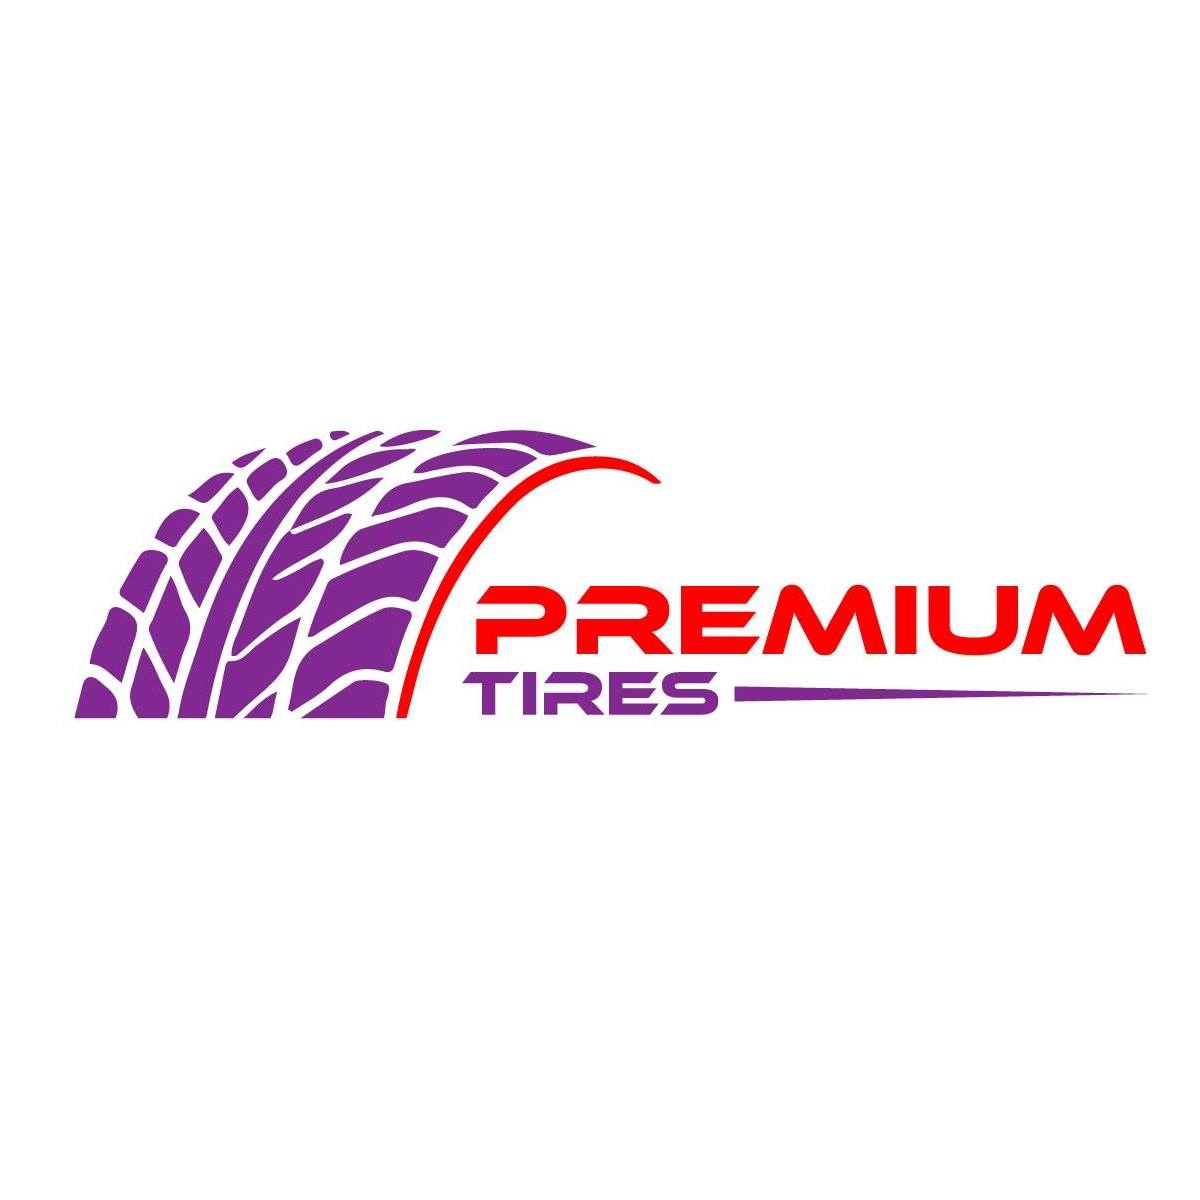 Premium Tires Barbados